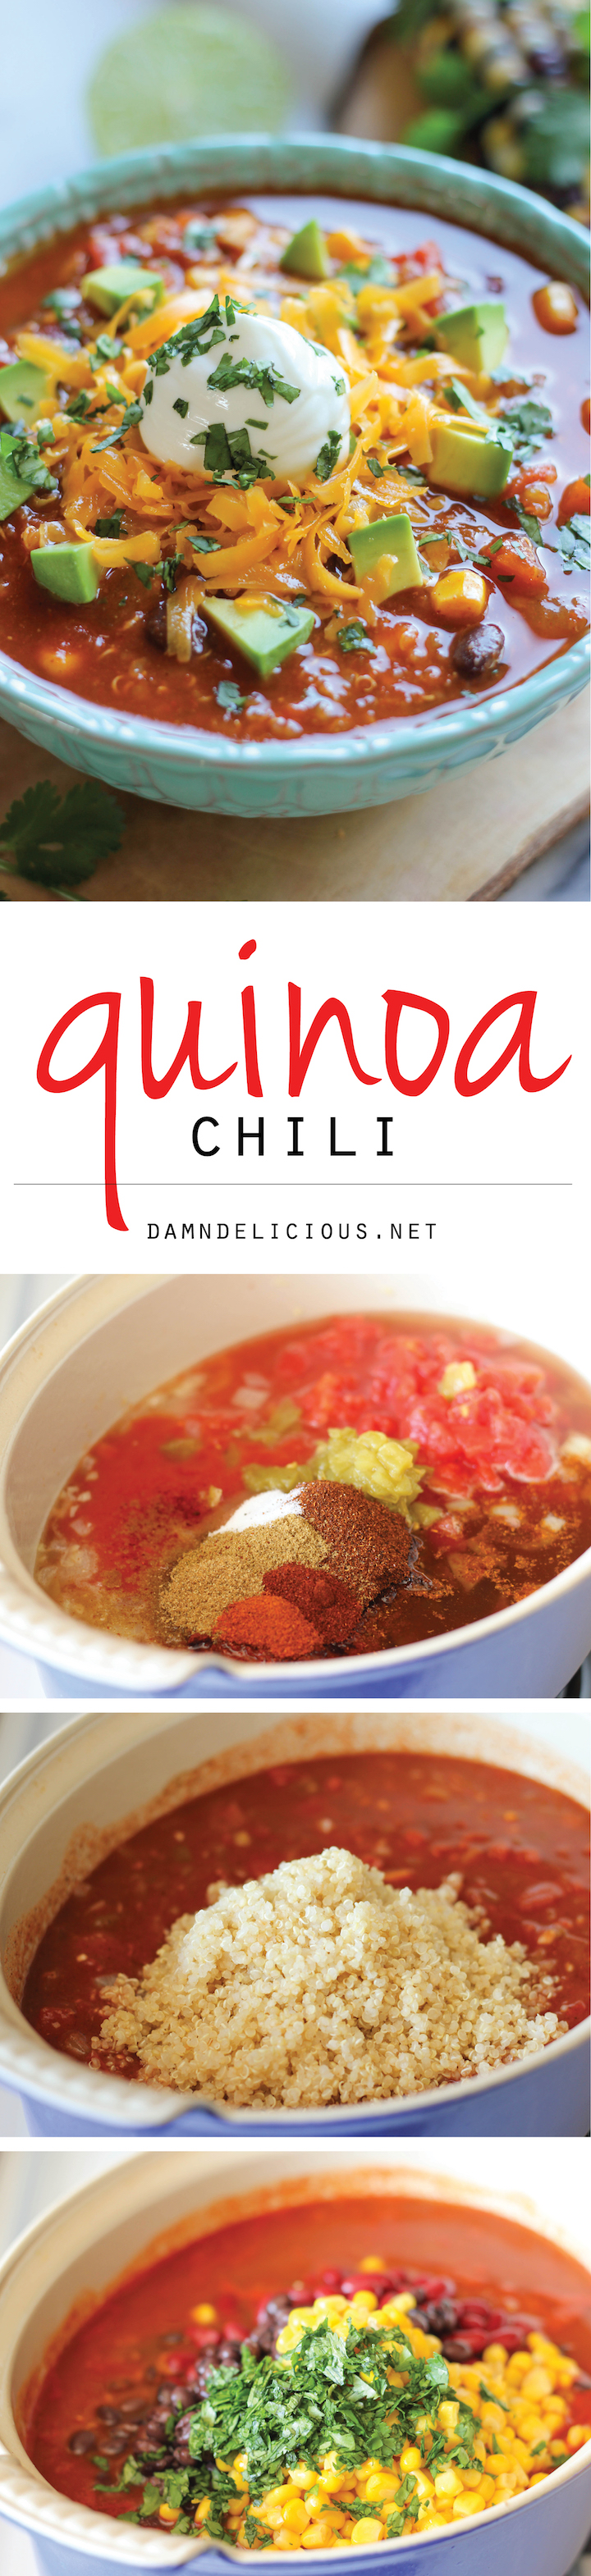 Quinoa Chili Damn Delicious